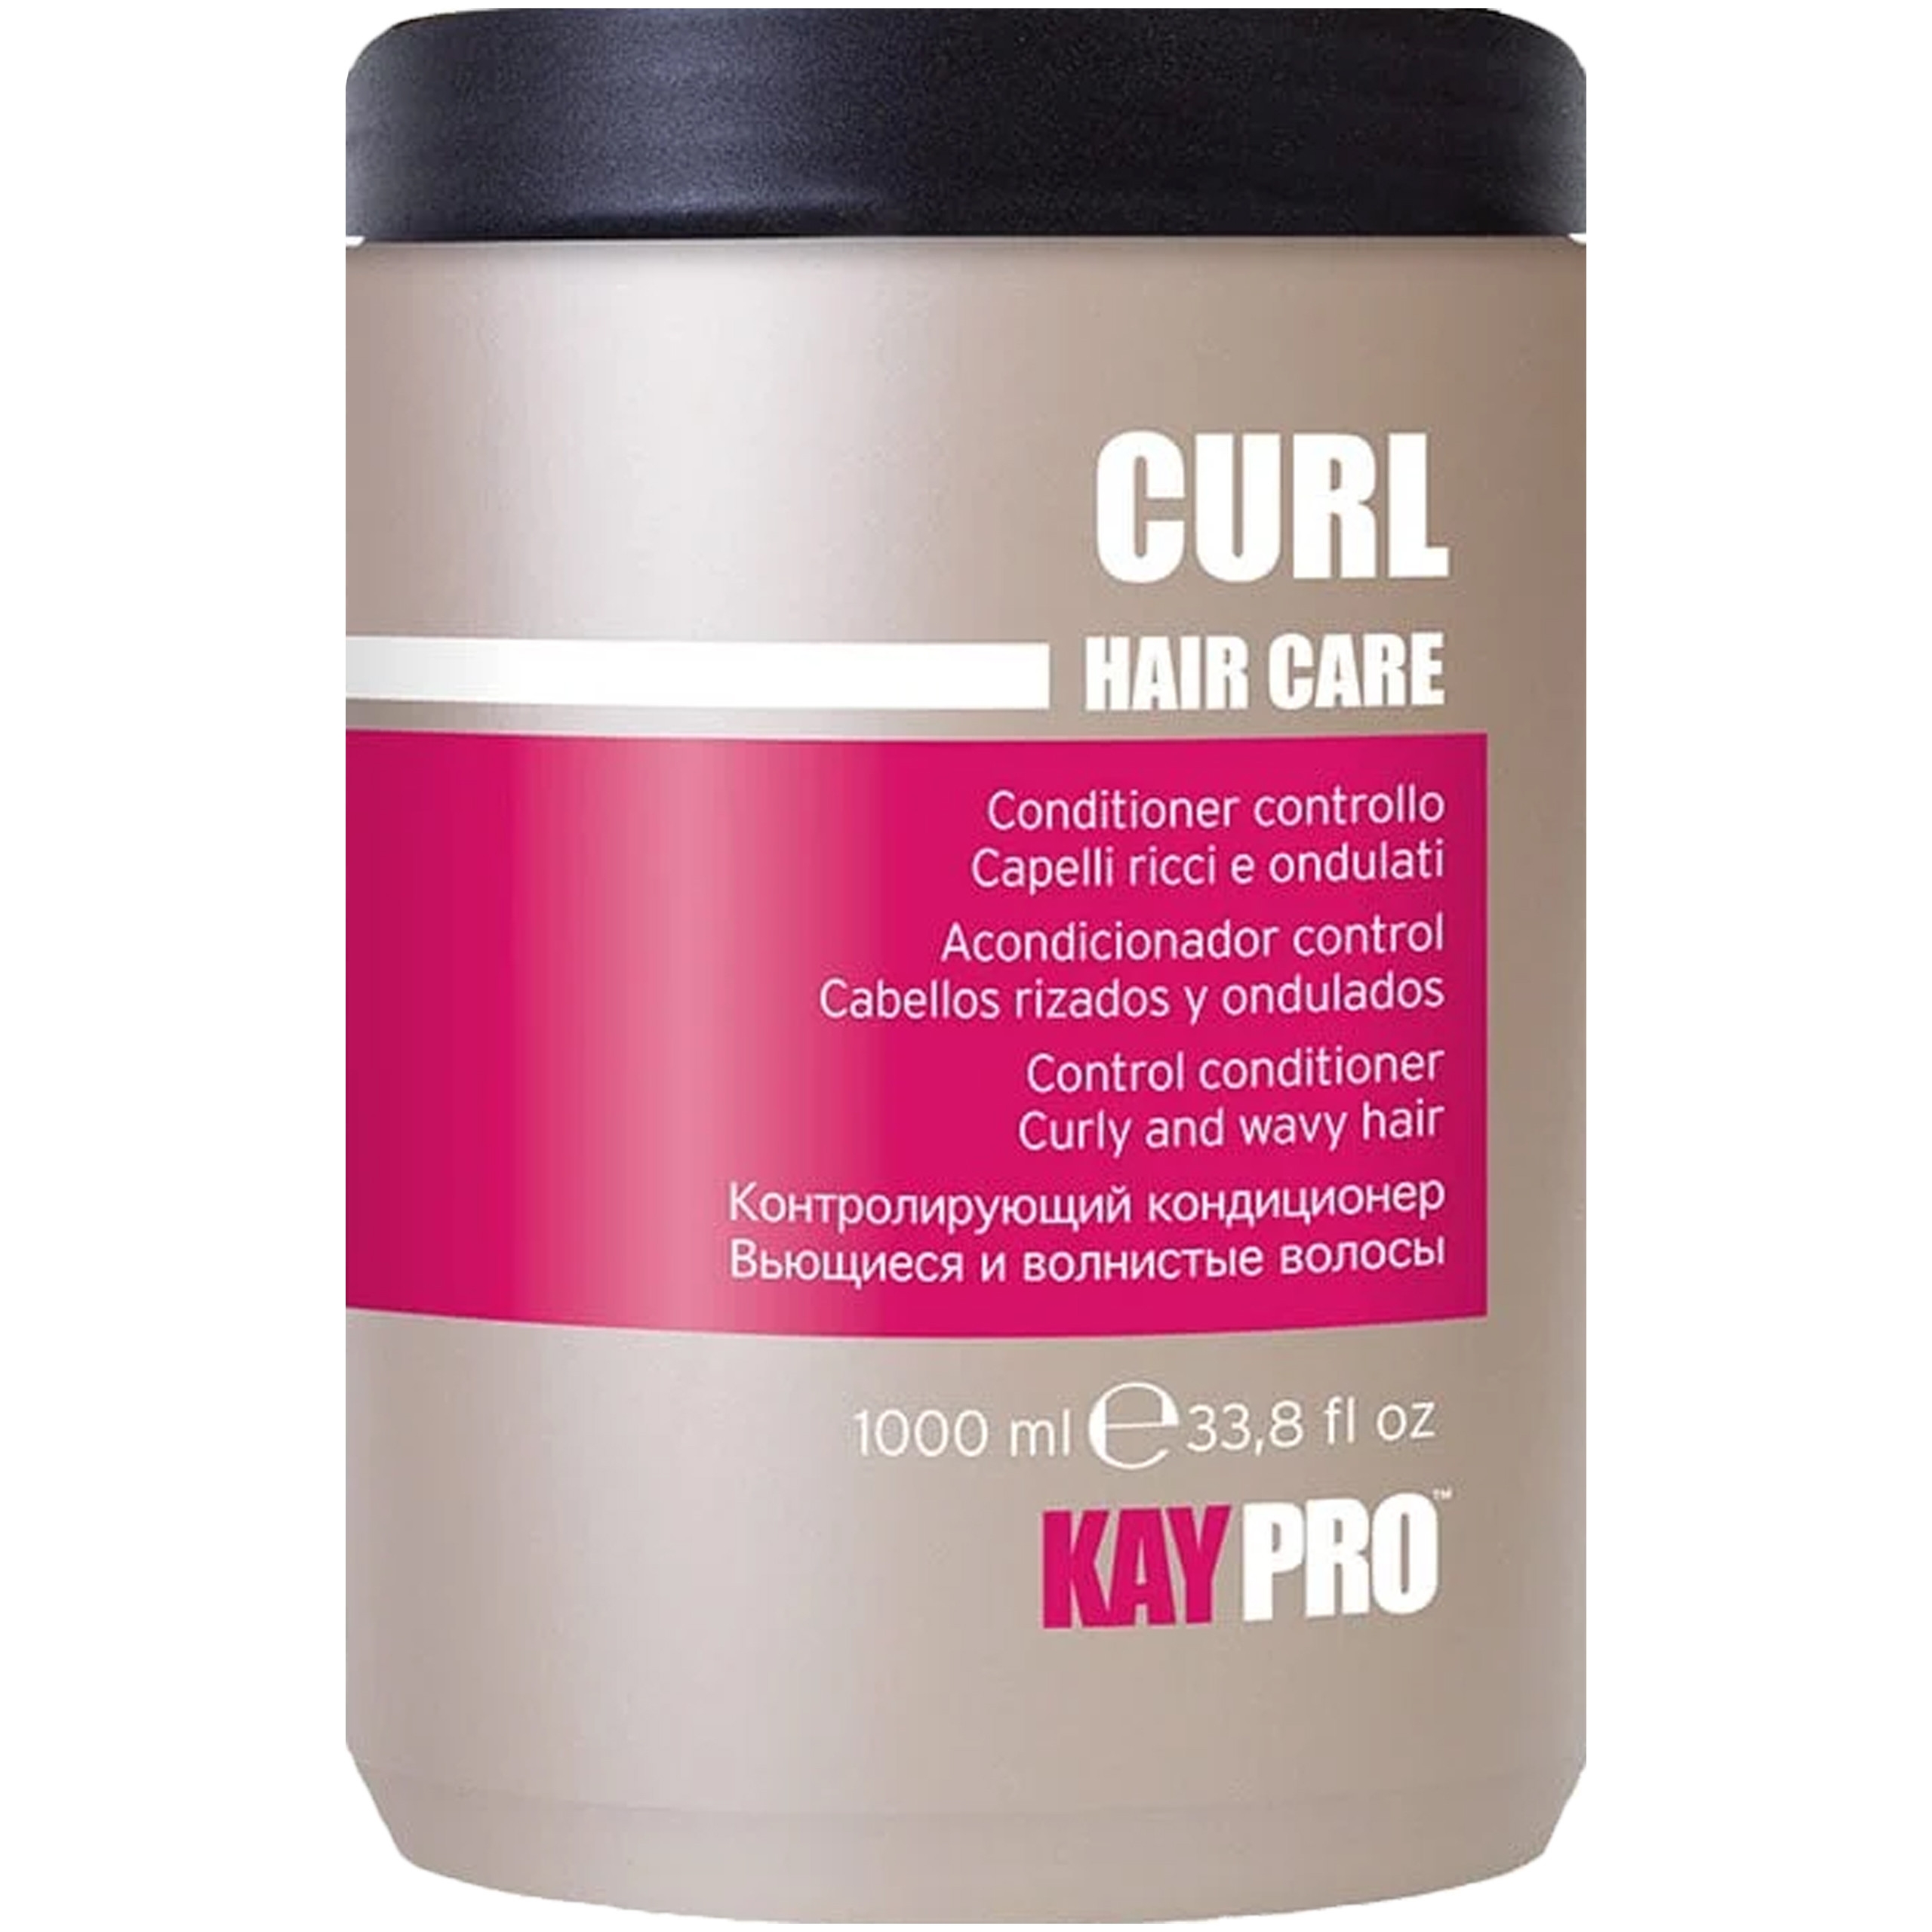 Фото - Шампунь KayPro Curl Hair Care - odżywka do włosów kręconych, 1000ml 